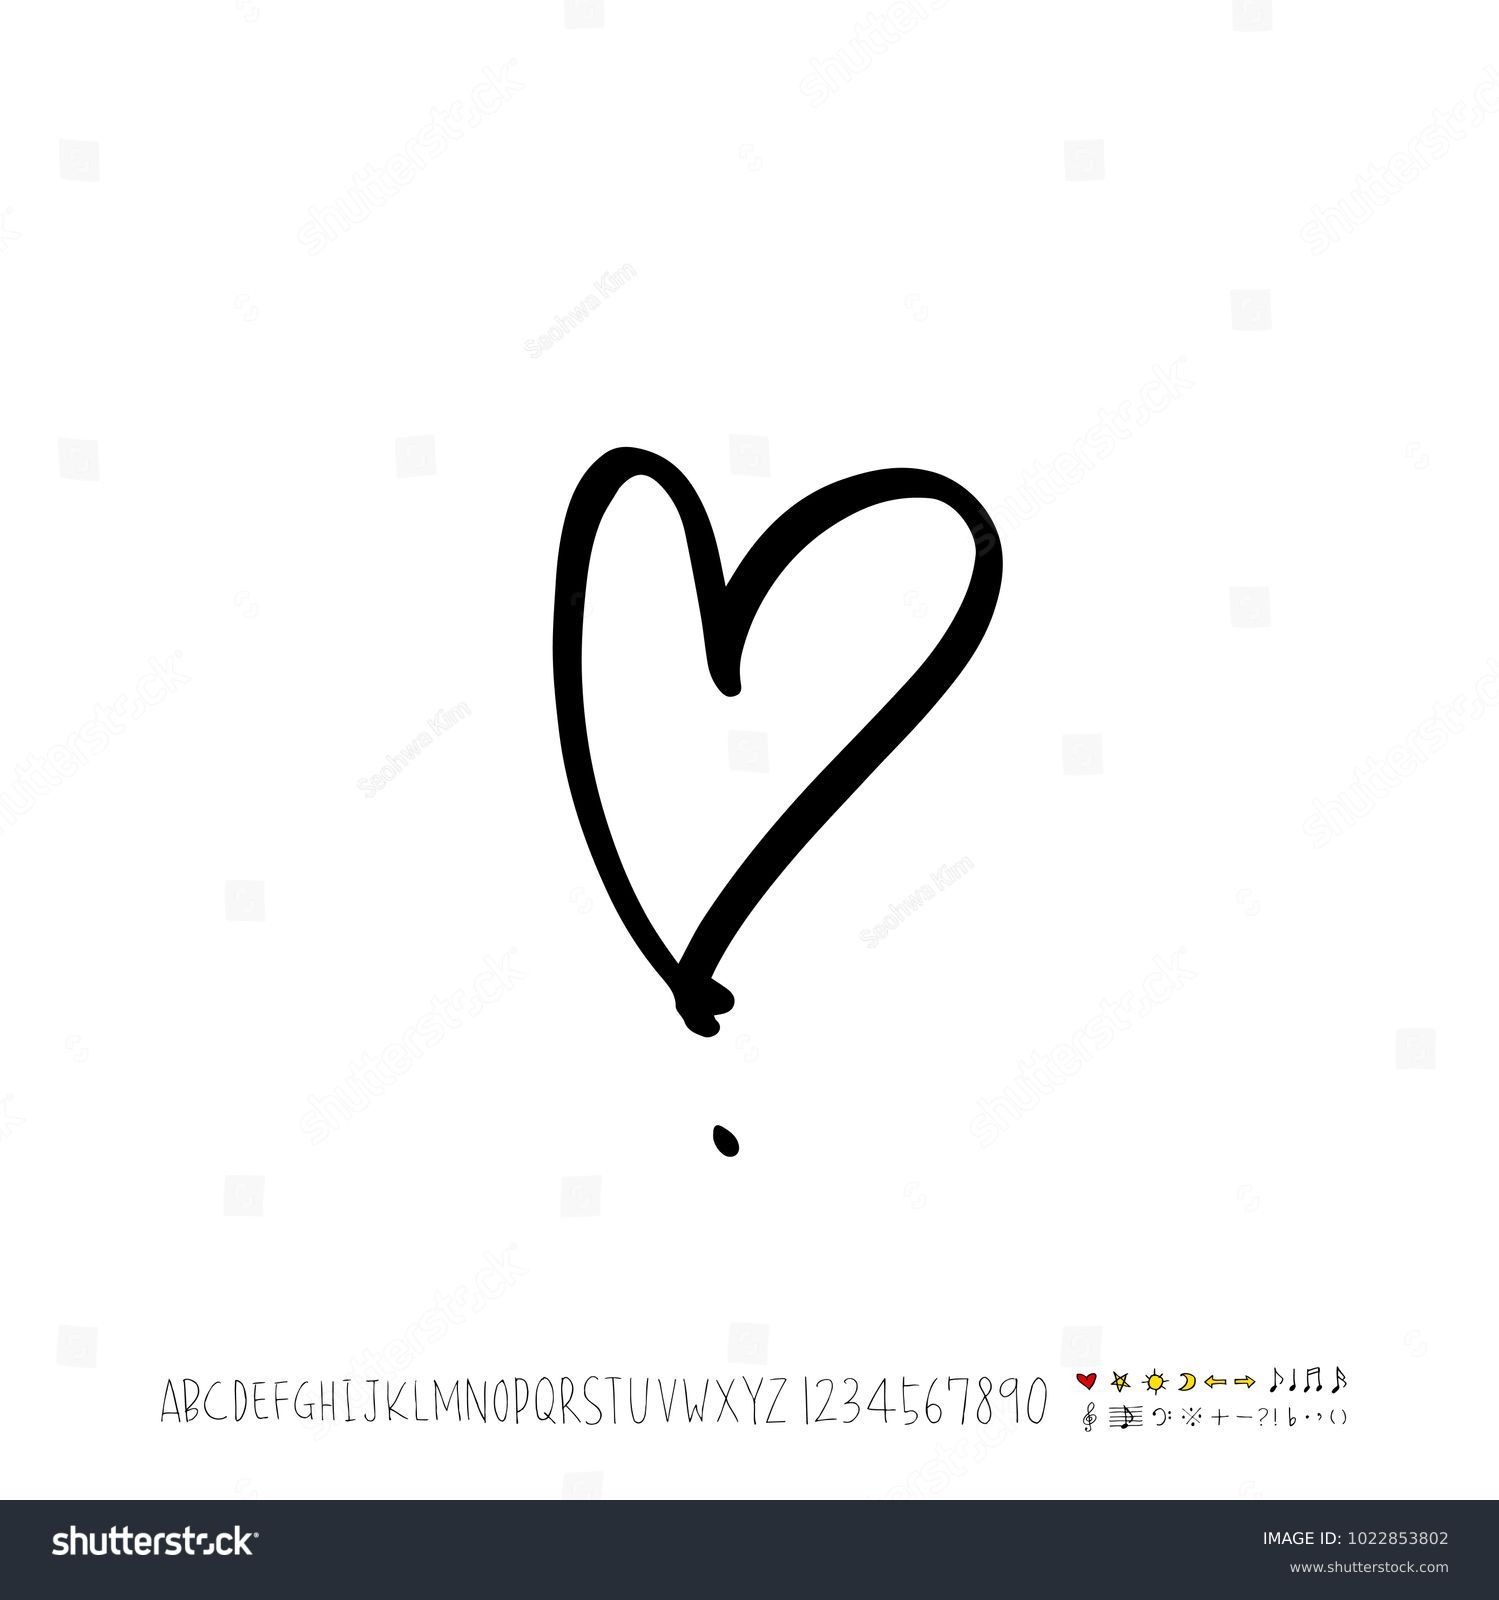 98,622 Handwrite heart Images, Stock Photos & Vectors | Shutterstock